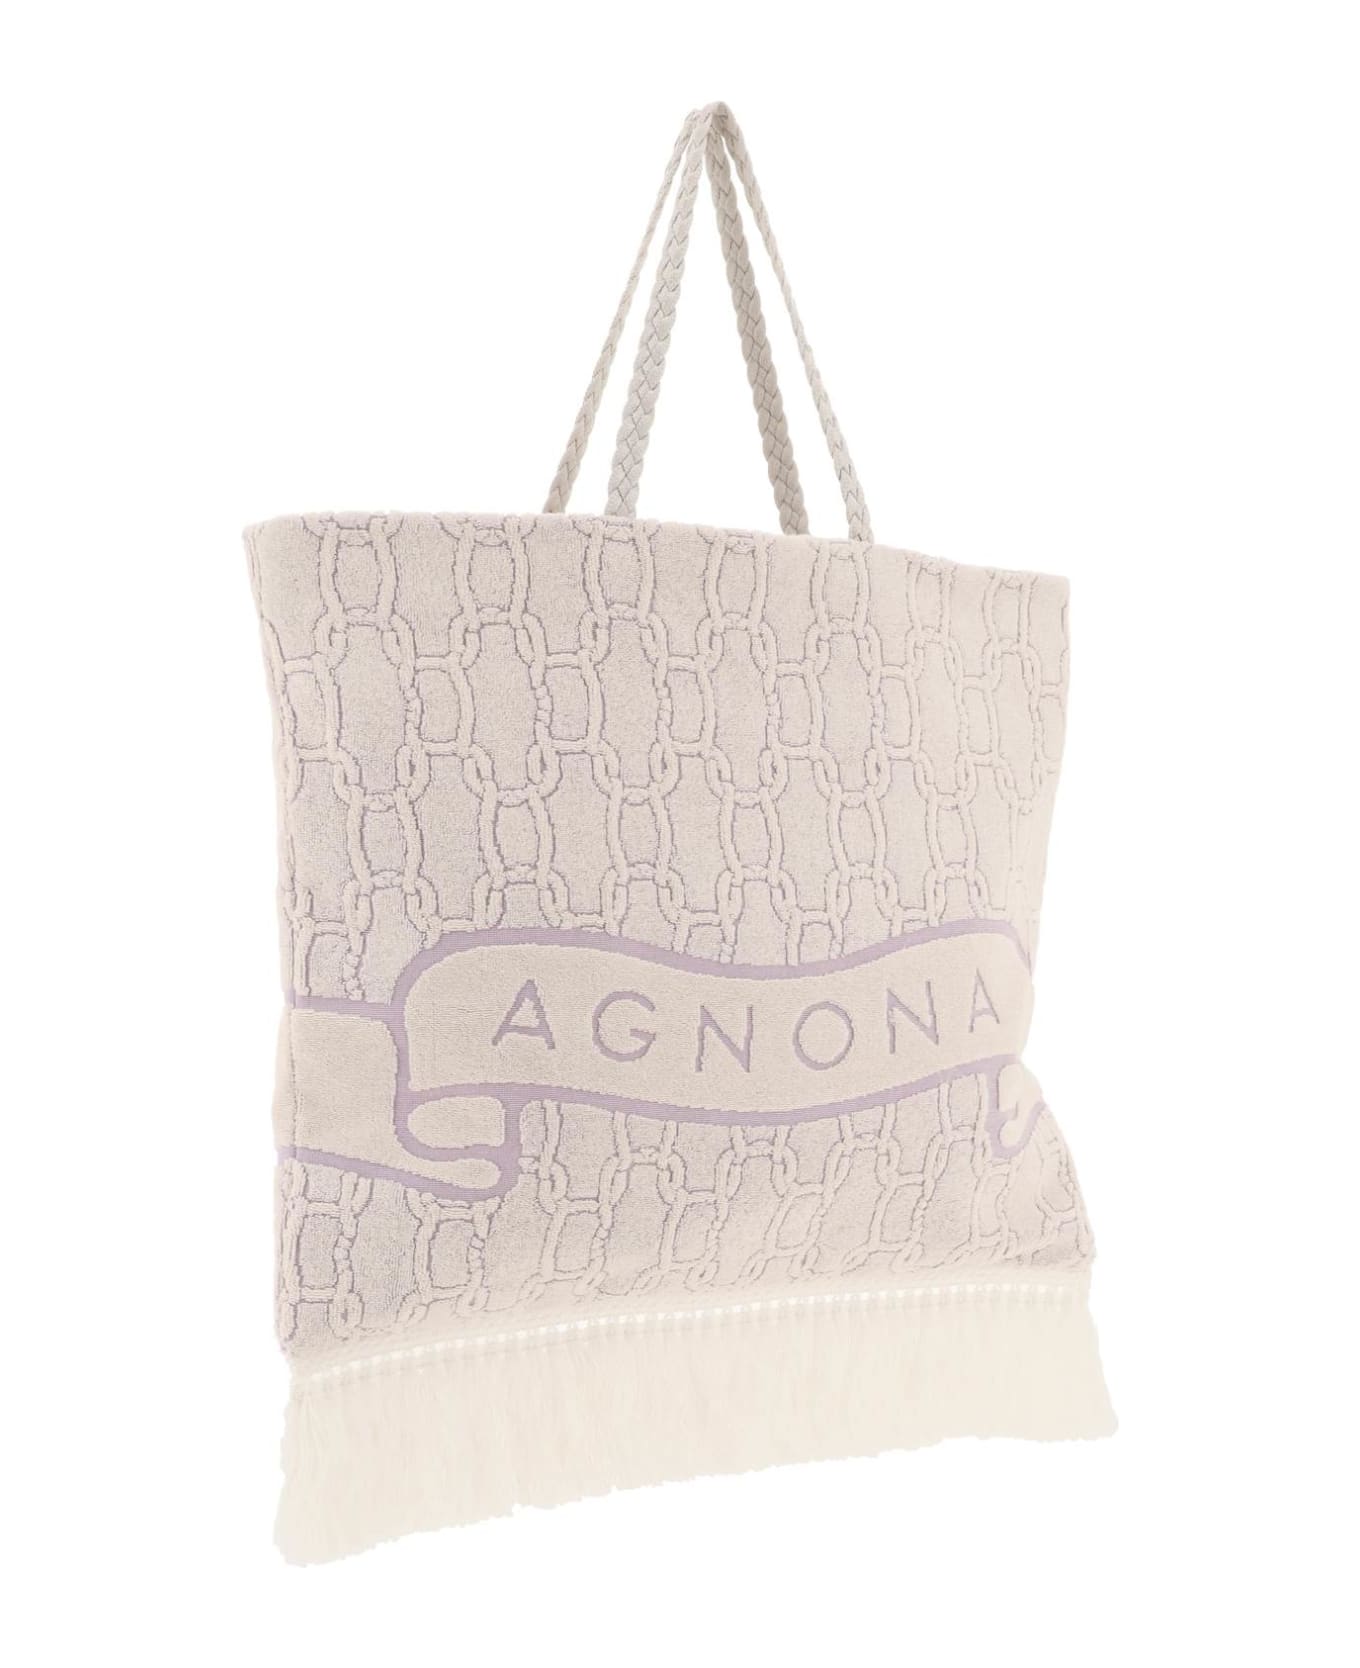 Agnona Cotton Tote Bag - MALVA (White) トートバッグ